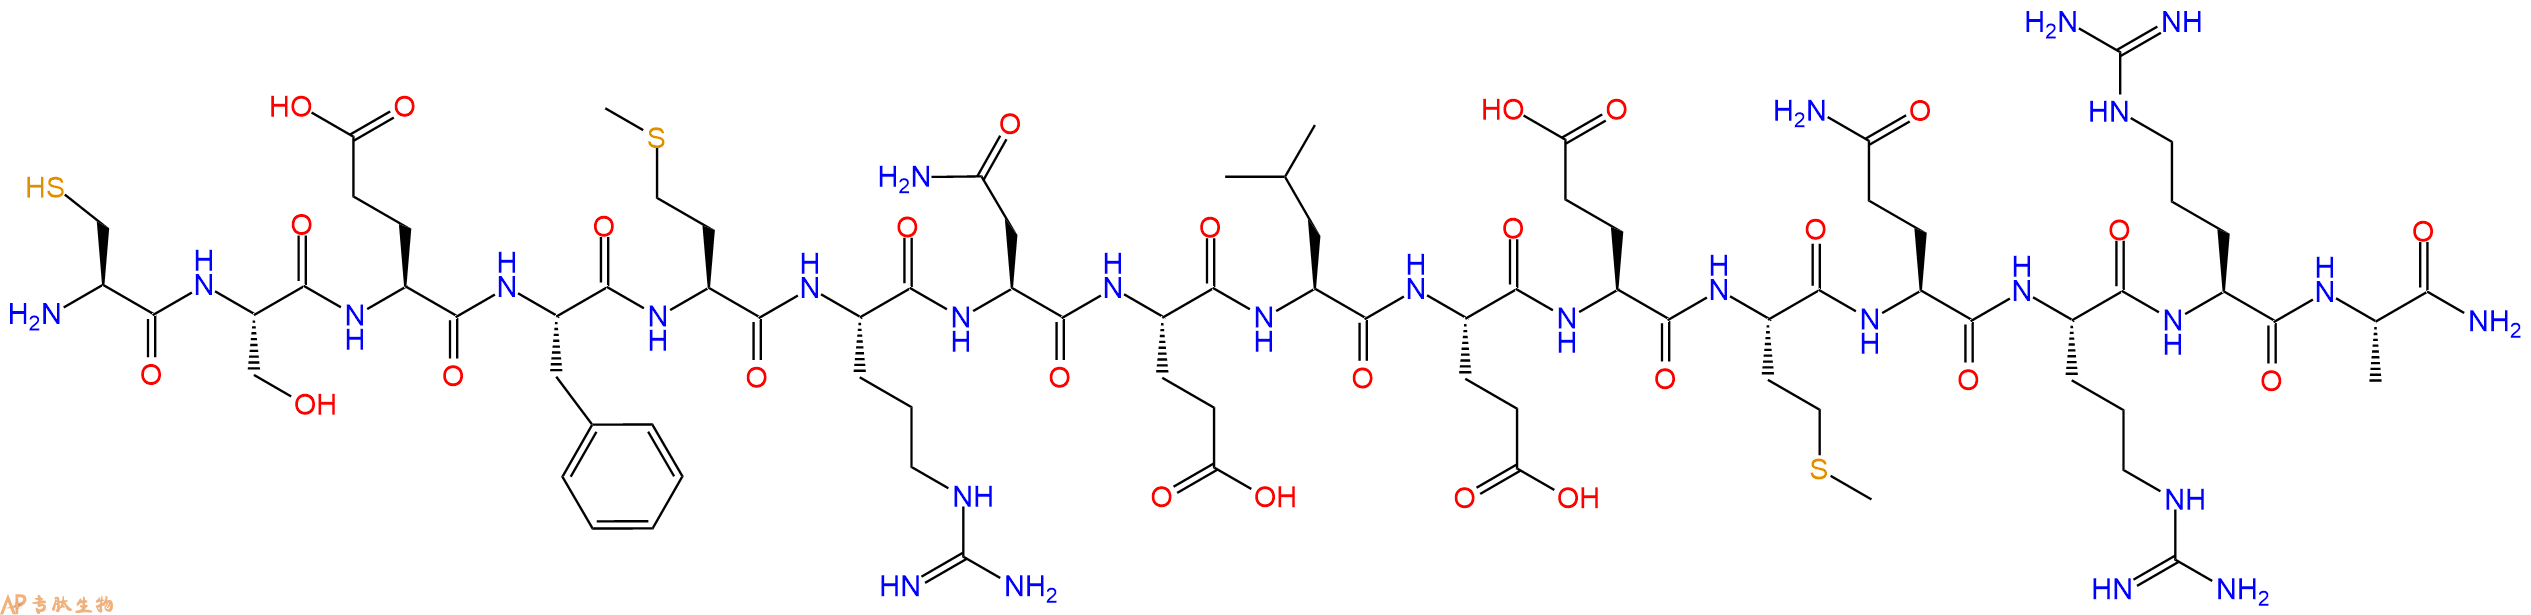 专肽生物产品H2N-Cys-Ser-Glu-Phe-Met-Arg-Asn-Glu-Leu-Glu-Glu-Me